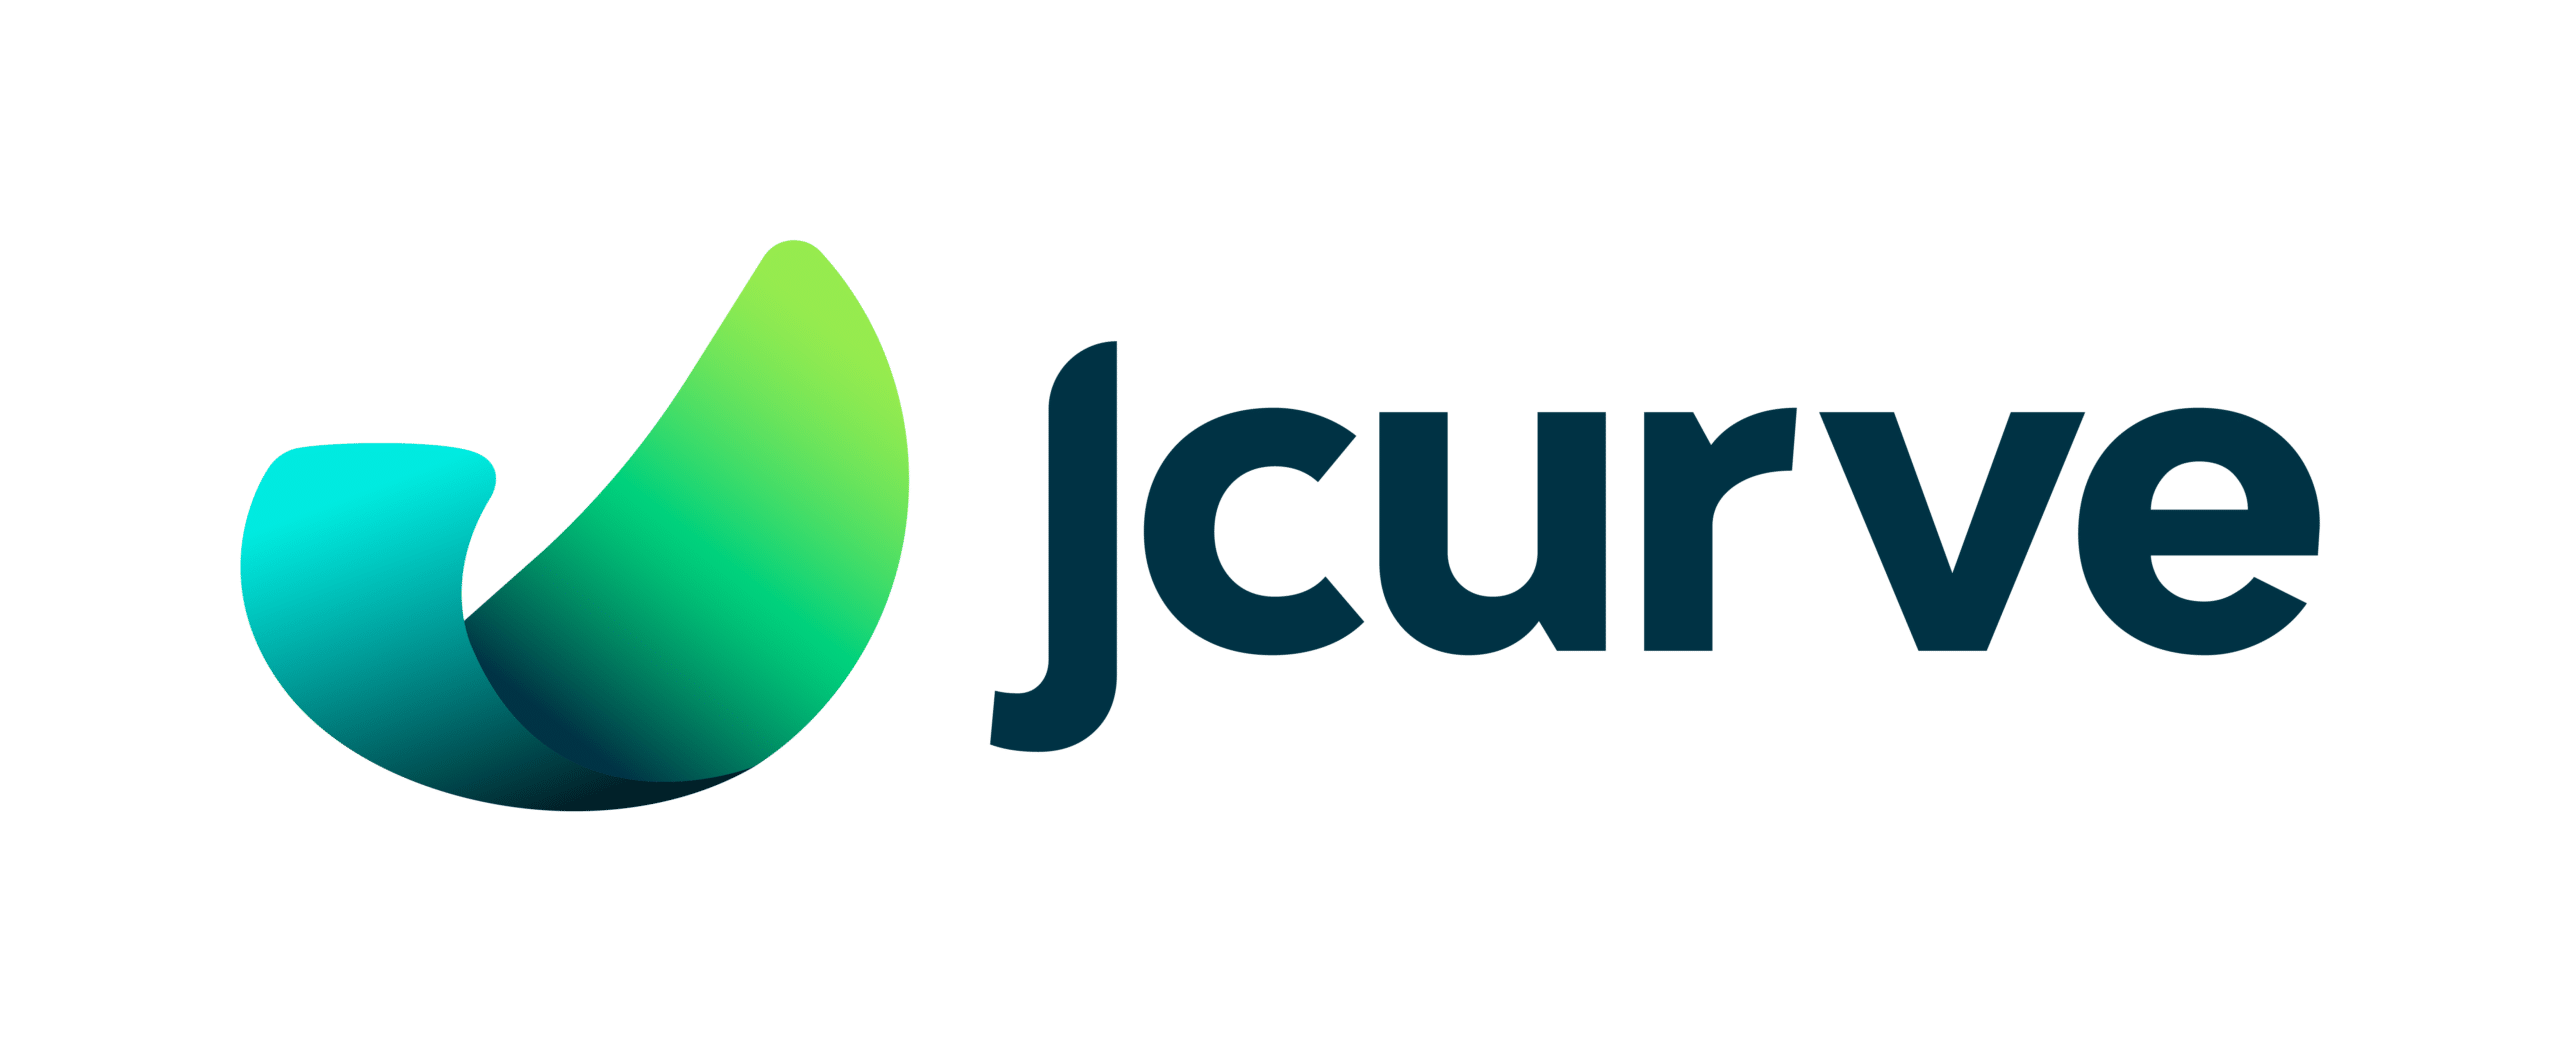 (c) Jcurvesolutions.com